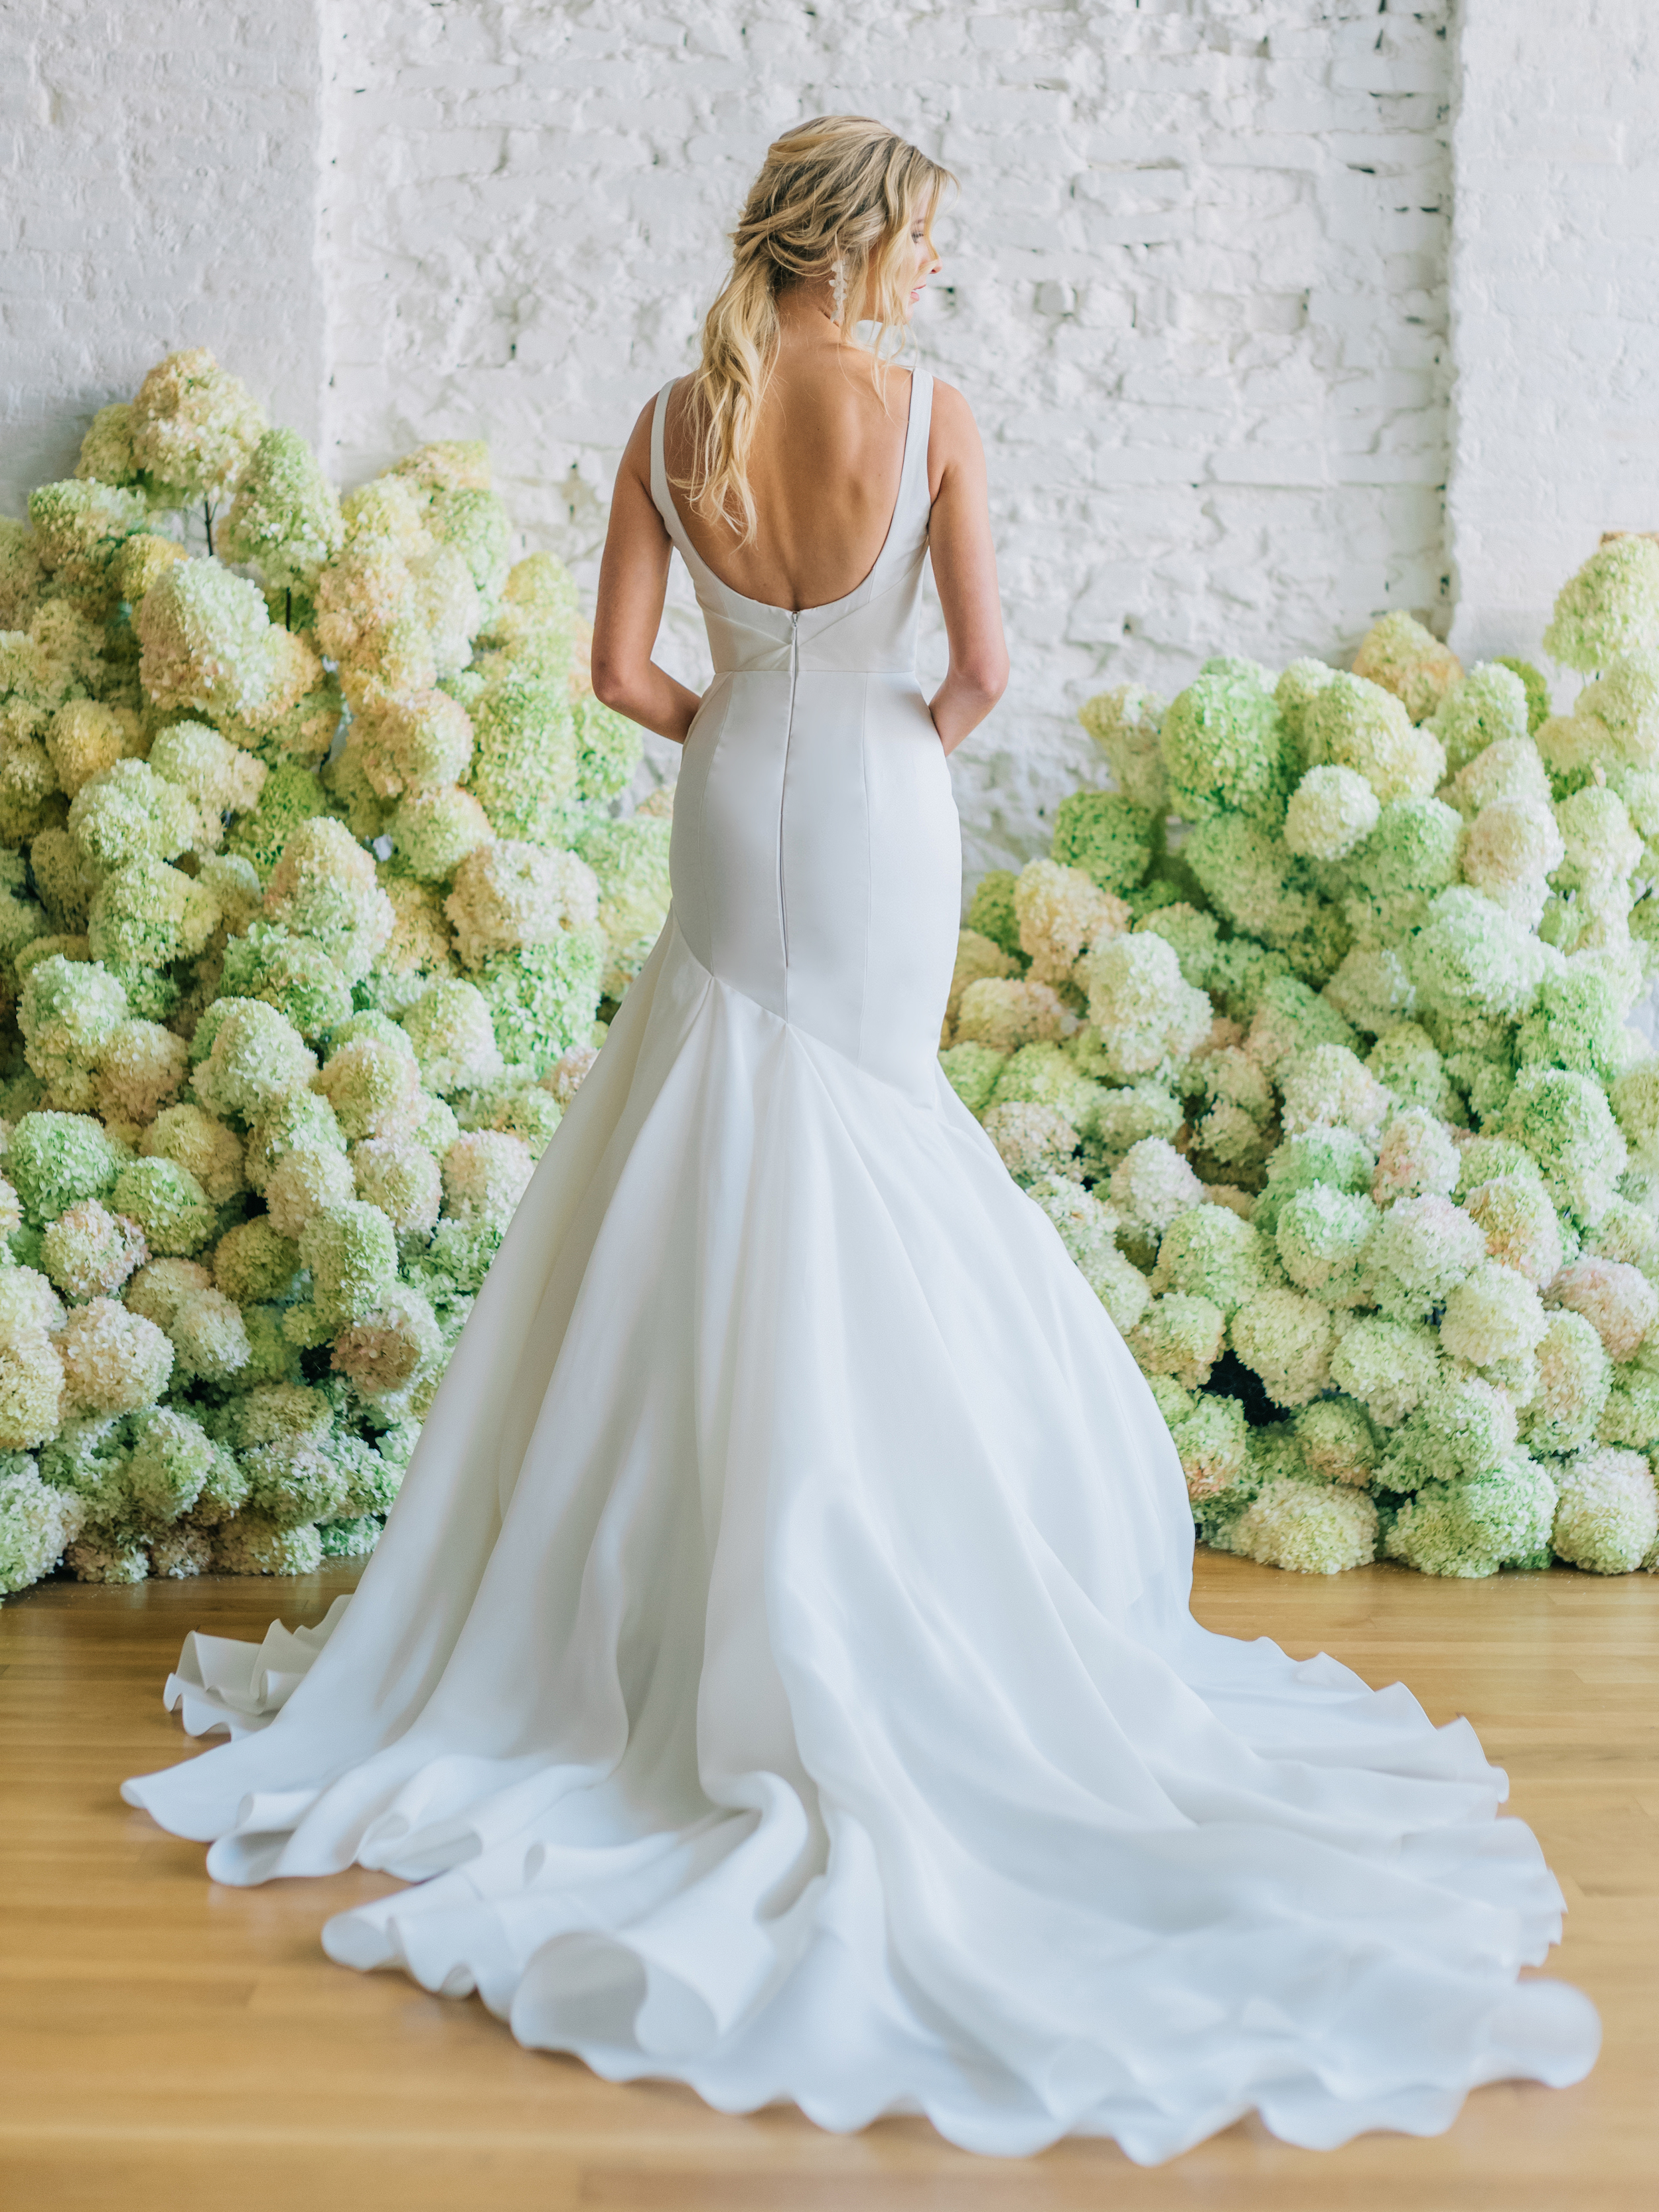 Maquette fit and flare silk gazar wedding gown by bridal designer Carol Hannah7.jpg